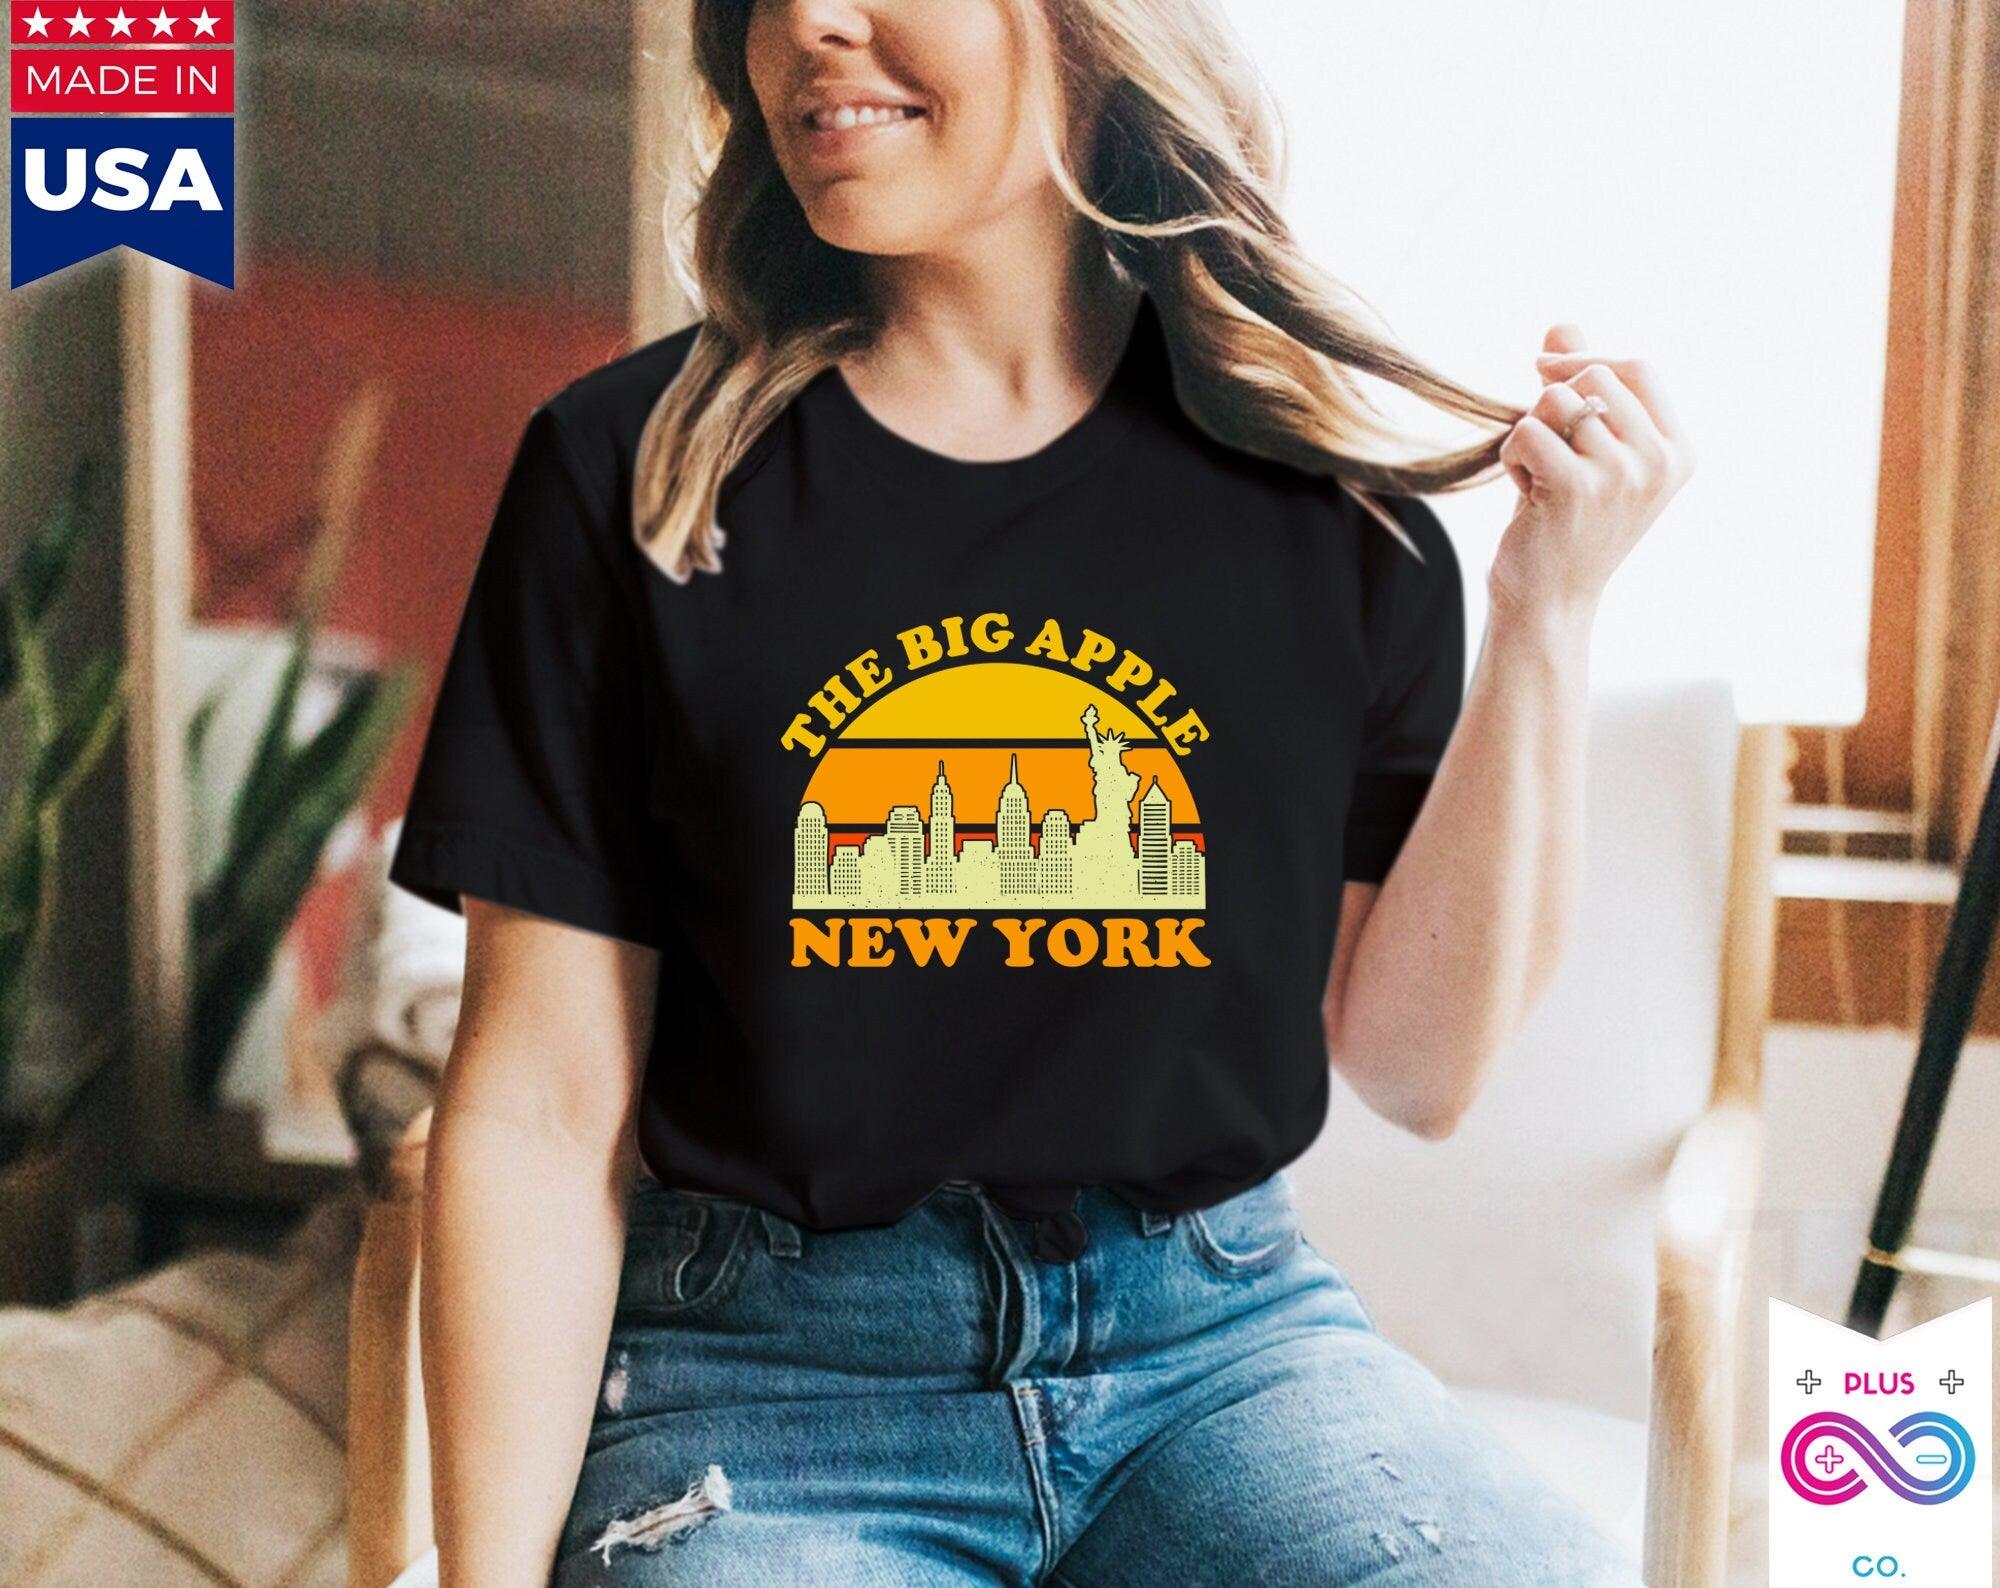 Lielais ābols Ņujorka | Retro saulrieta T-krekli, Ņujorkas pilsētas panorāmas suvenīru t-krekls, NYC ballīšu kostīms, Visit Trip Travel NY, Manhetenā - plusminusco.com